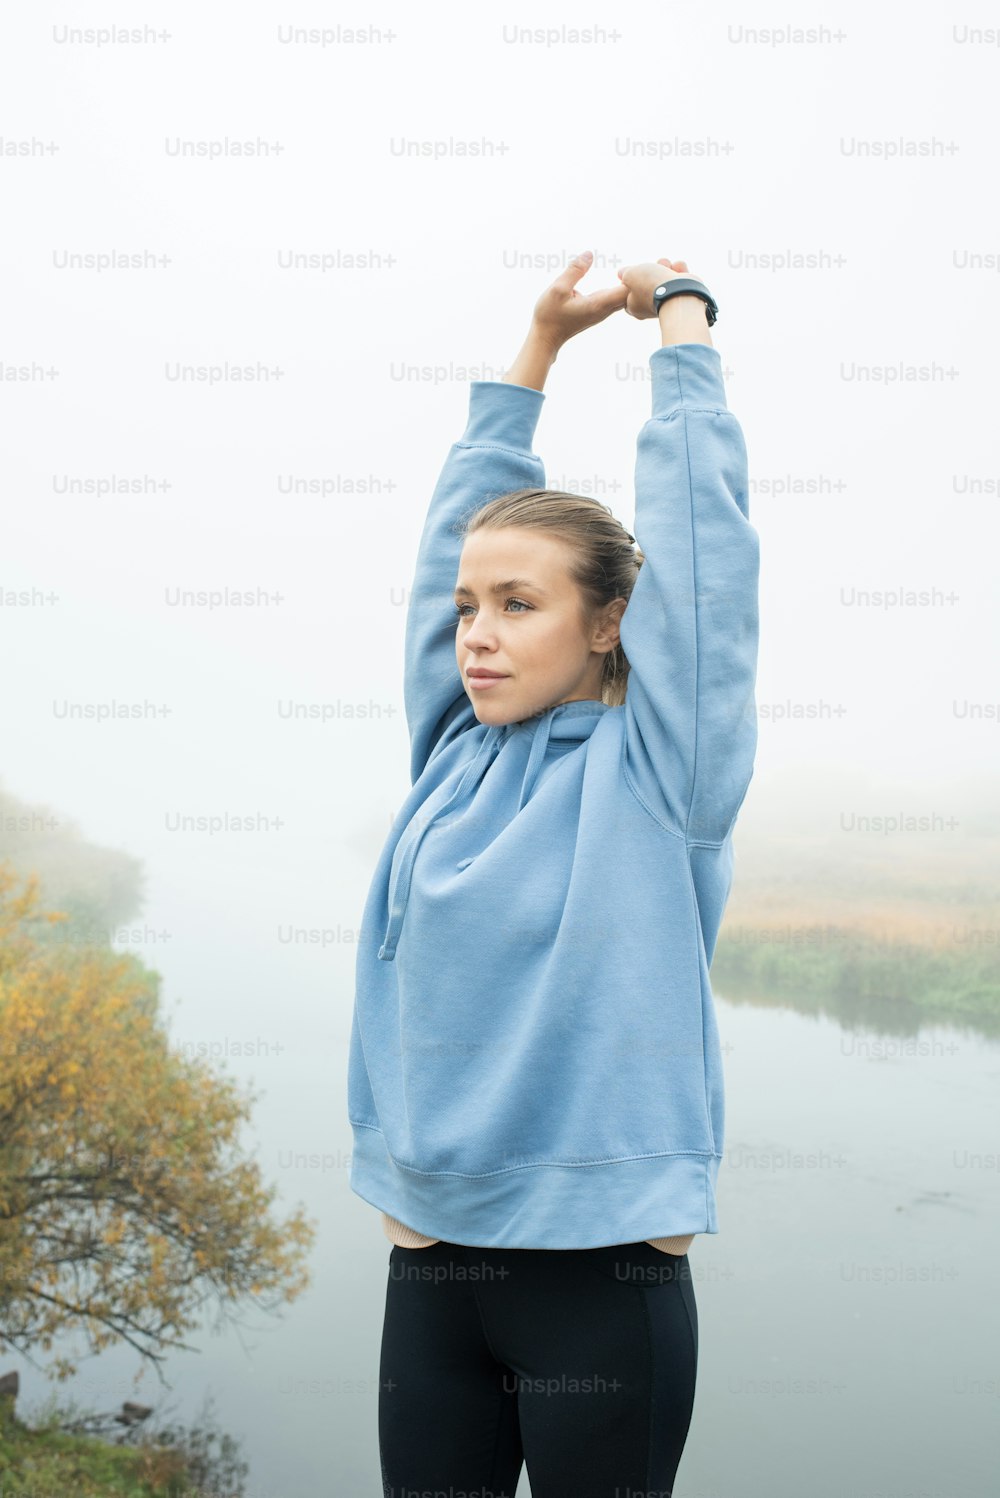 검은색 레긴과 파란색 후드티를 입은 젊은 스포츠우먼이 강변의 자연 환경에서 운동하는 동안 머리 위로 팔을 뻗고 있다